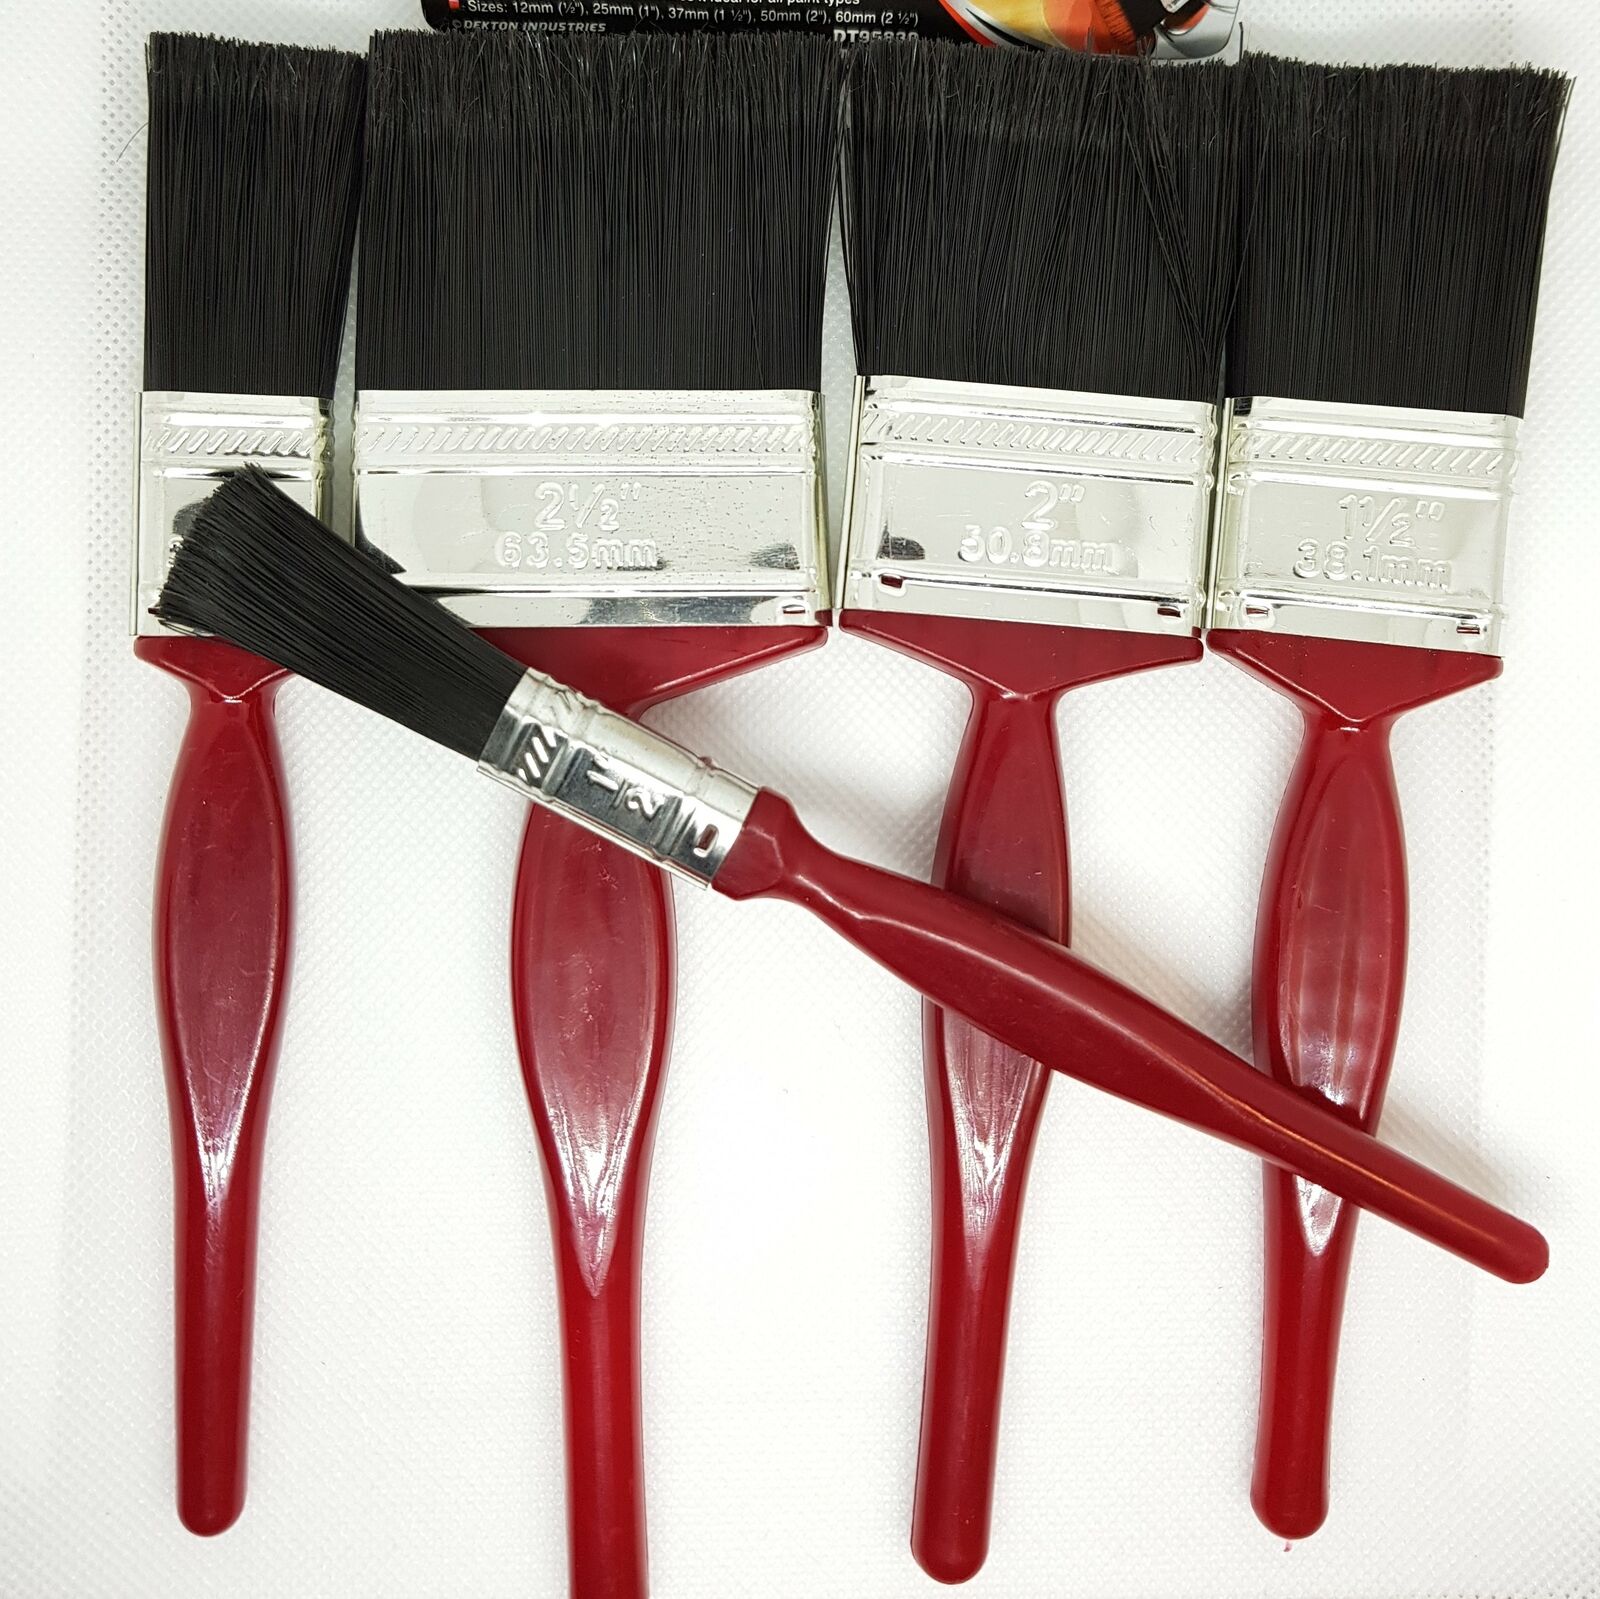 5-Pack-Paint-Brush-Set-for-Home-Painting-Decorating-Gloss-Emulsion-Undercoat-122538699297-2.jpg